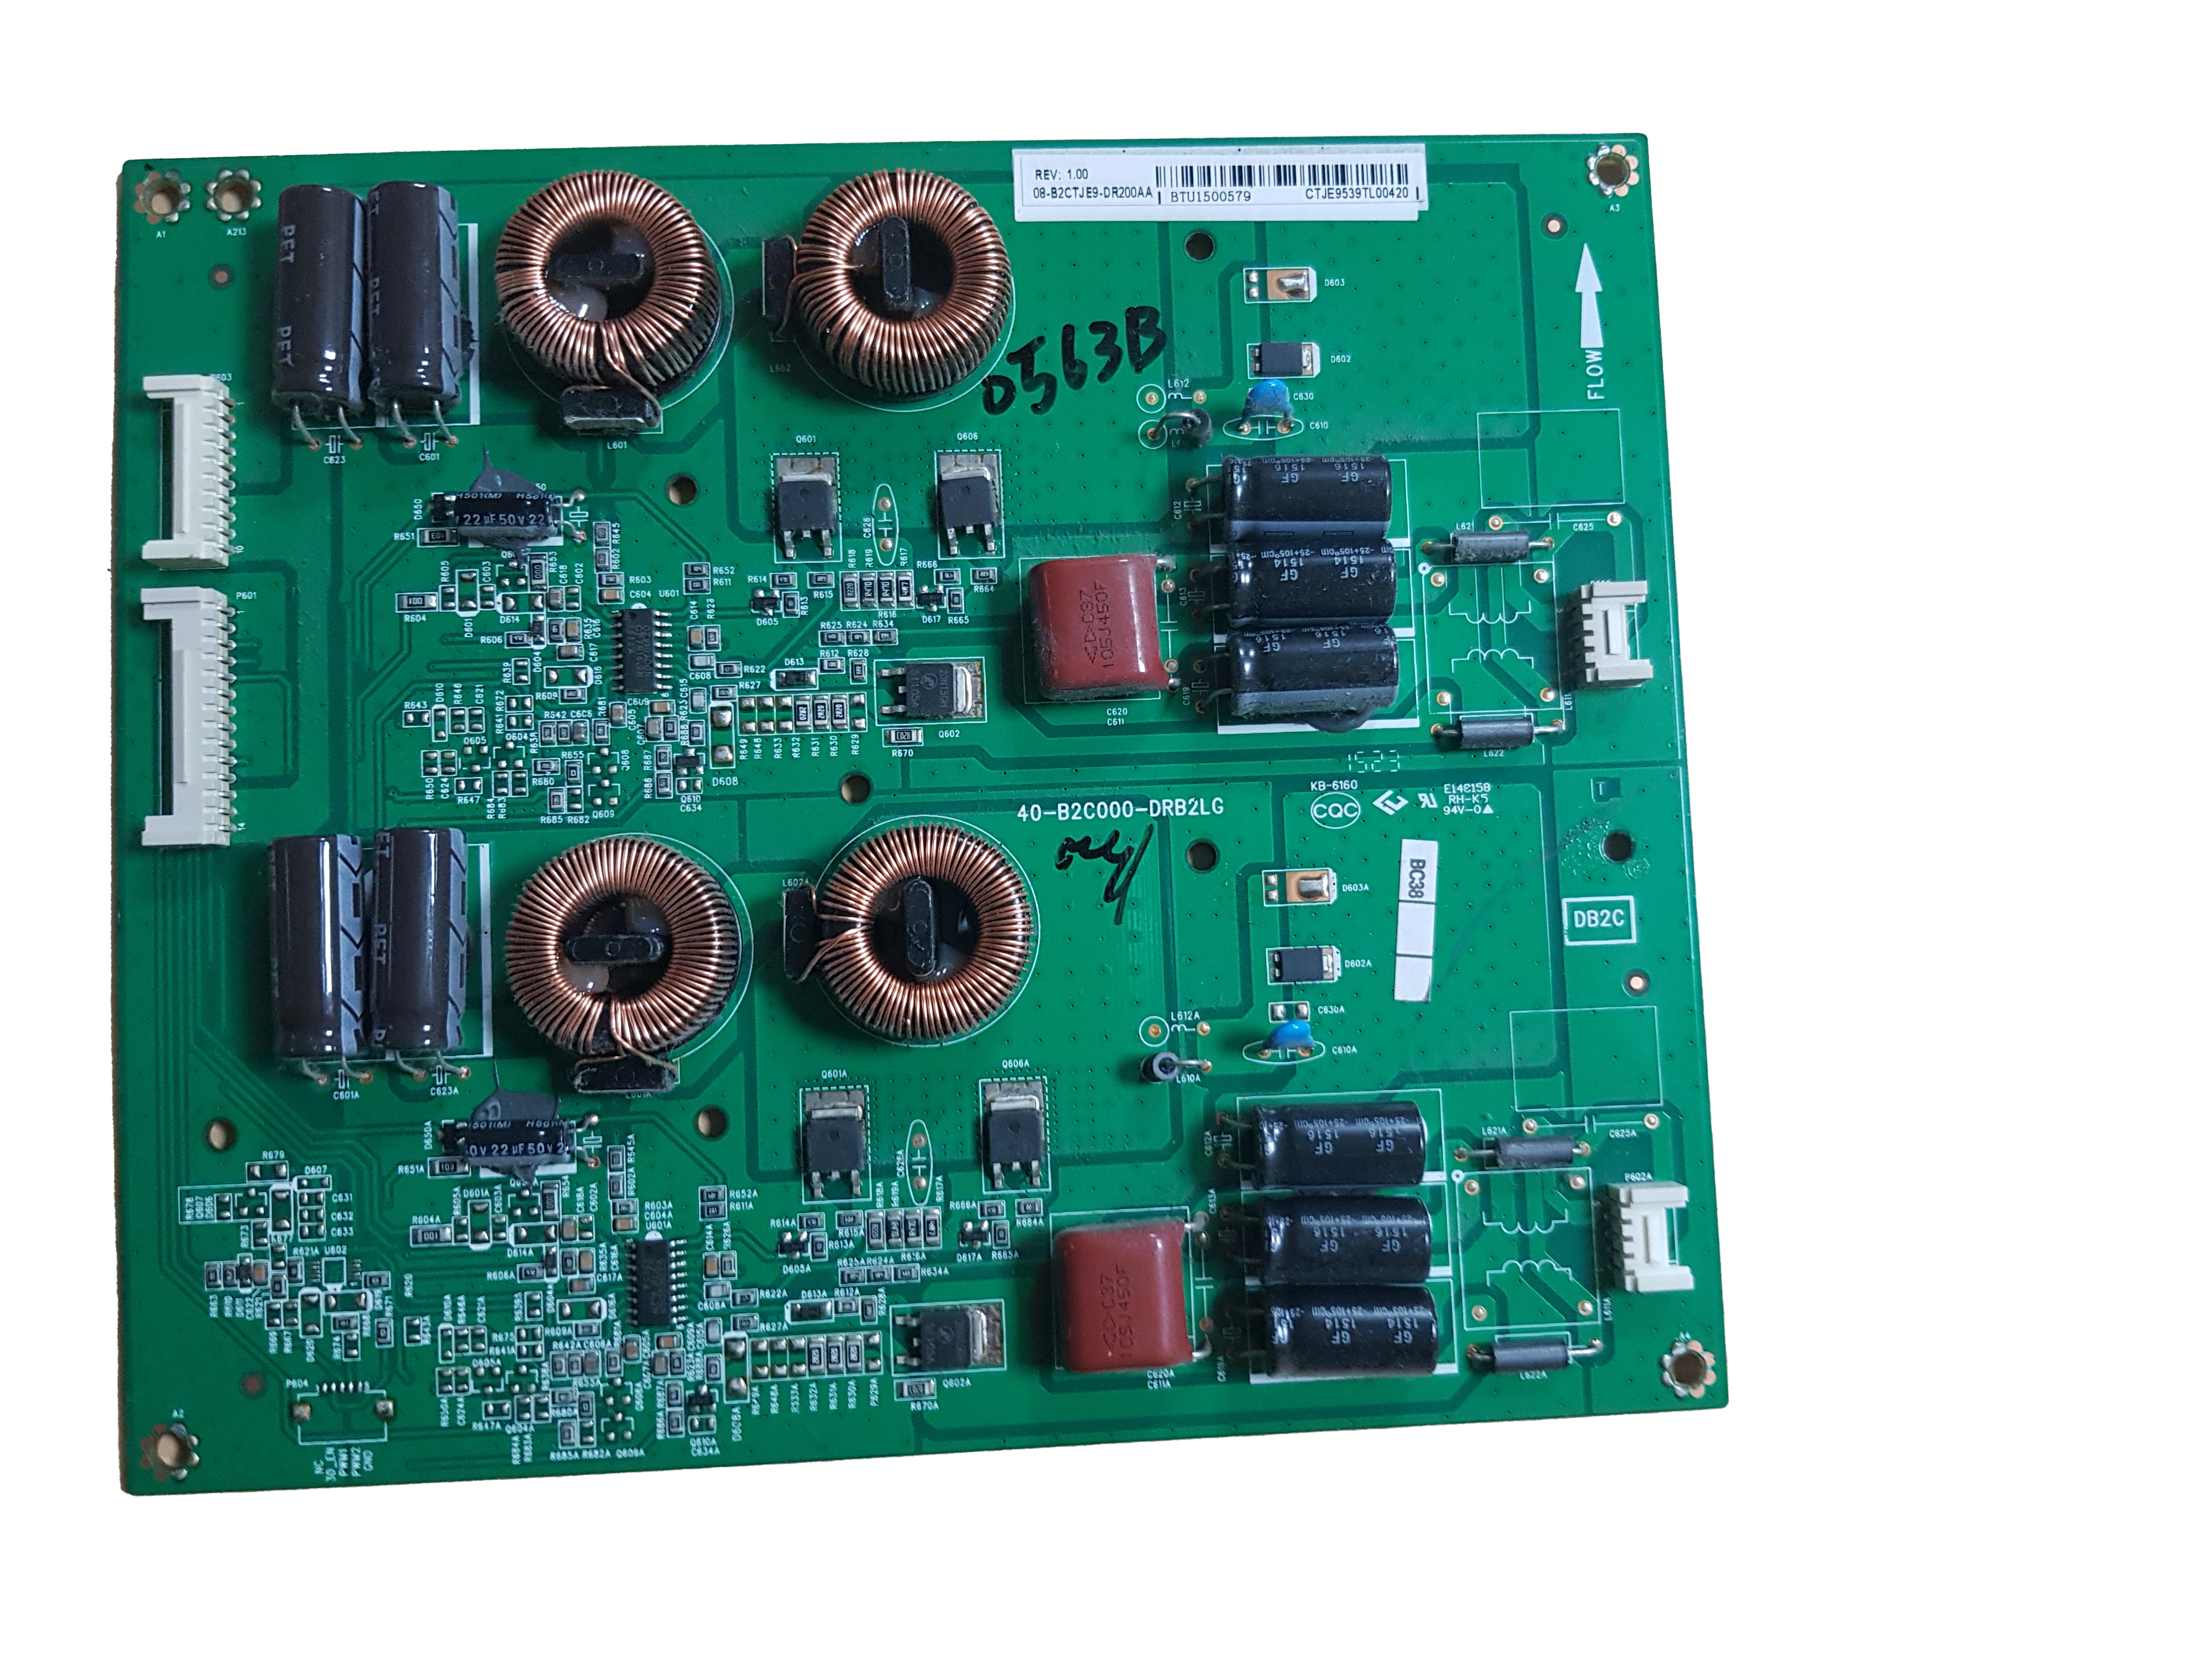 Module d'alimentation 40-b2c000-0rb2cg compatible Thomson 654a8796 - Imagen 1 de 1